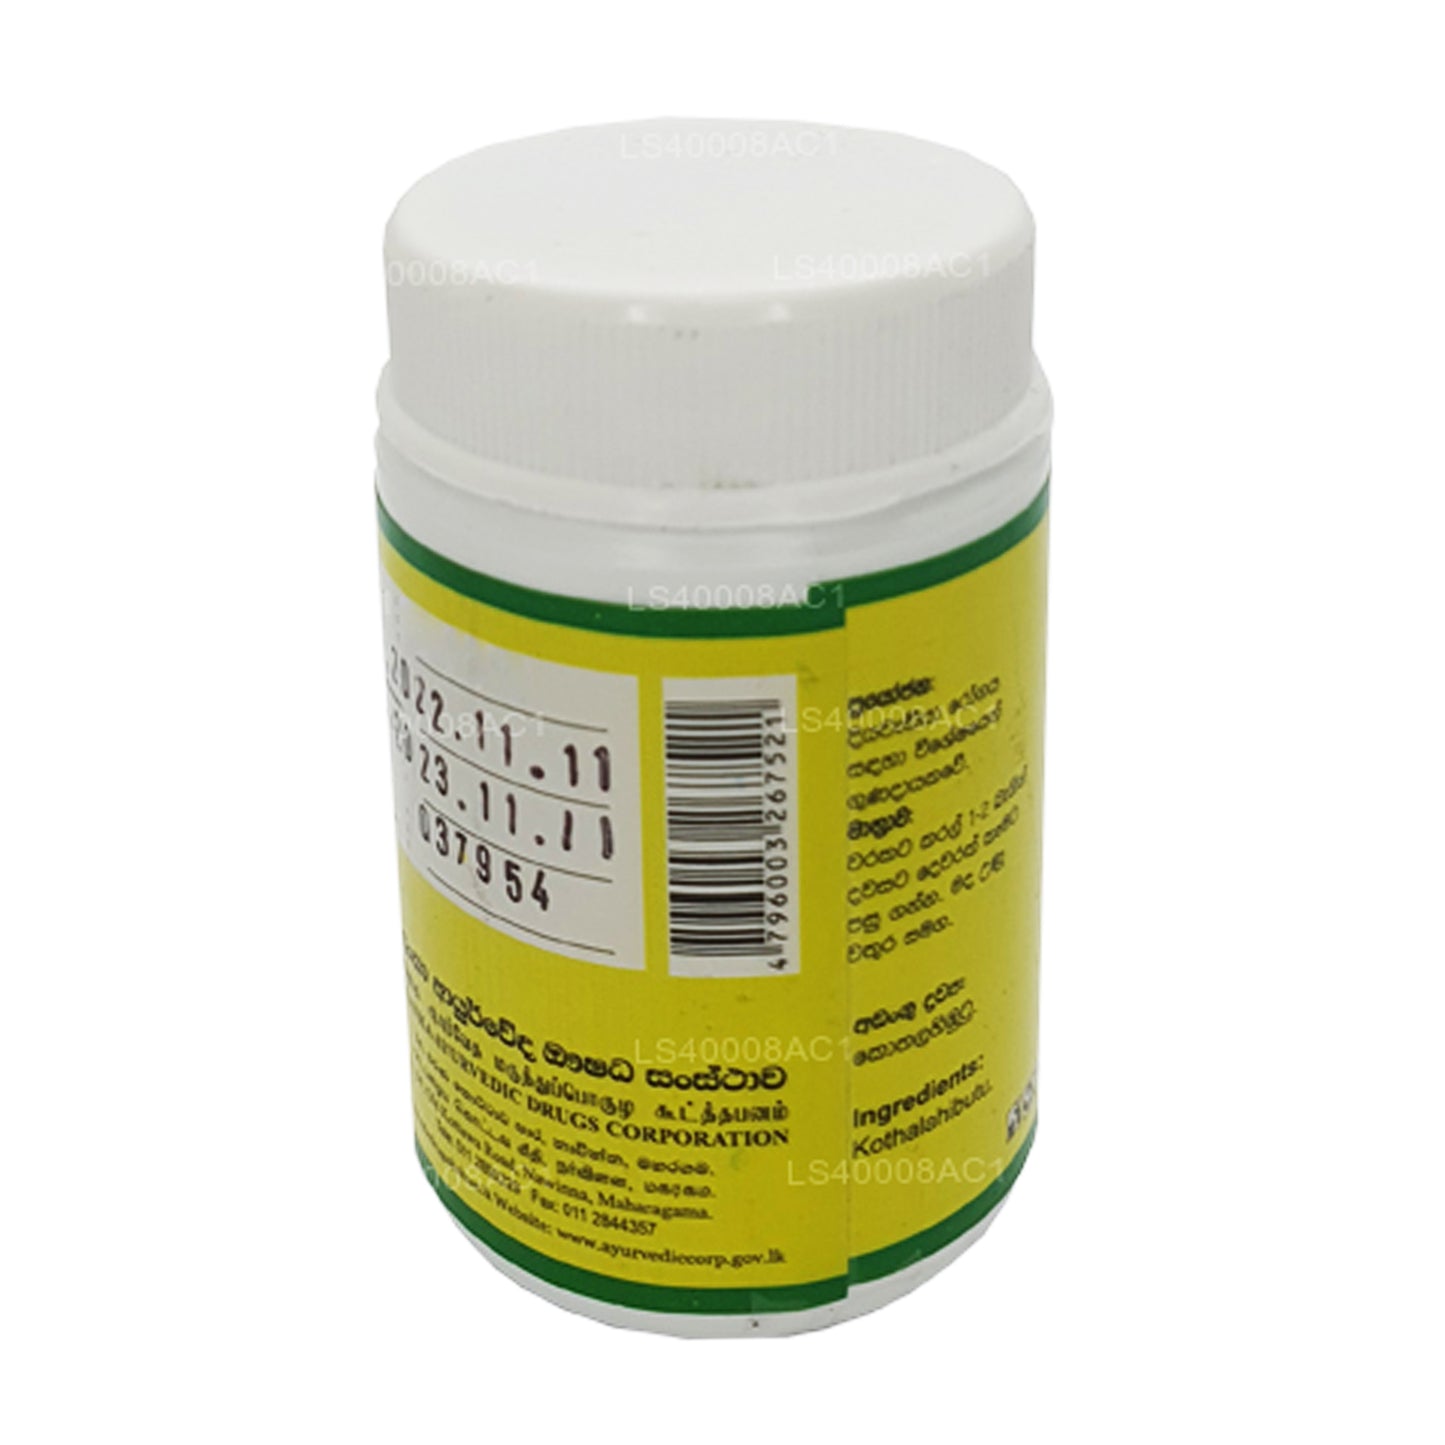 SLADC Kothala Himbutu (300 mg x 60 capsules)